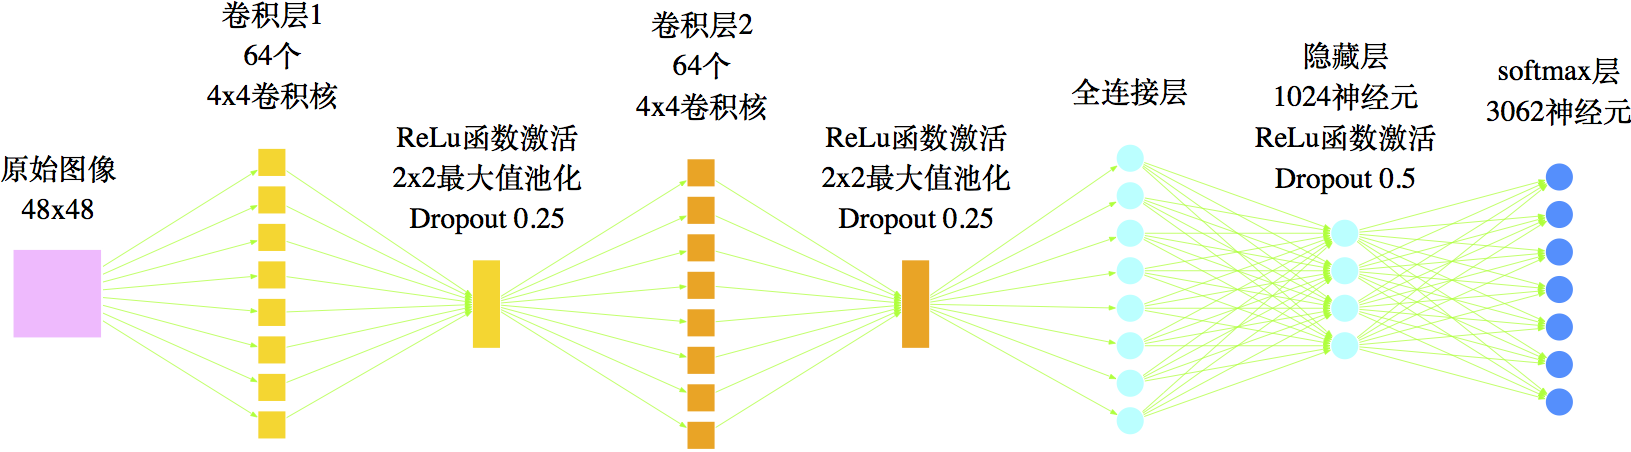 图18 本文用来识别印刷汉字的网络结构